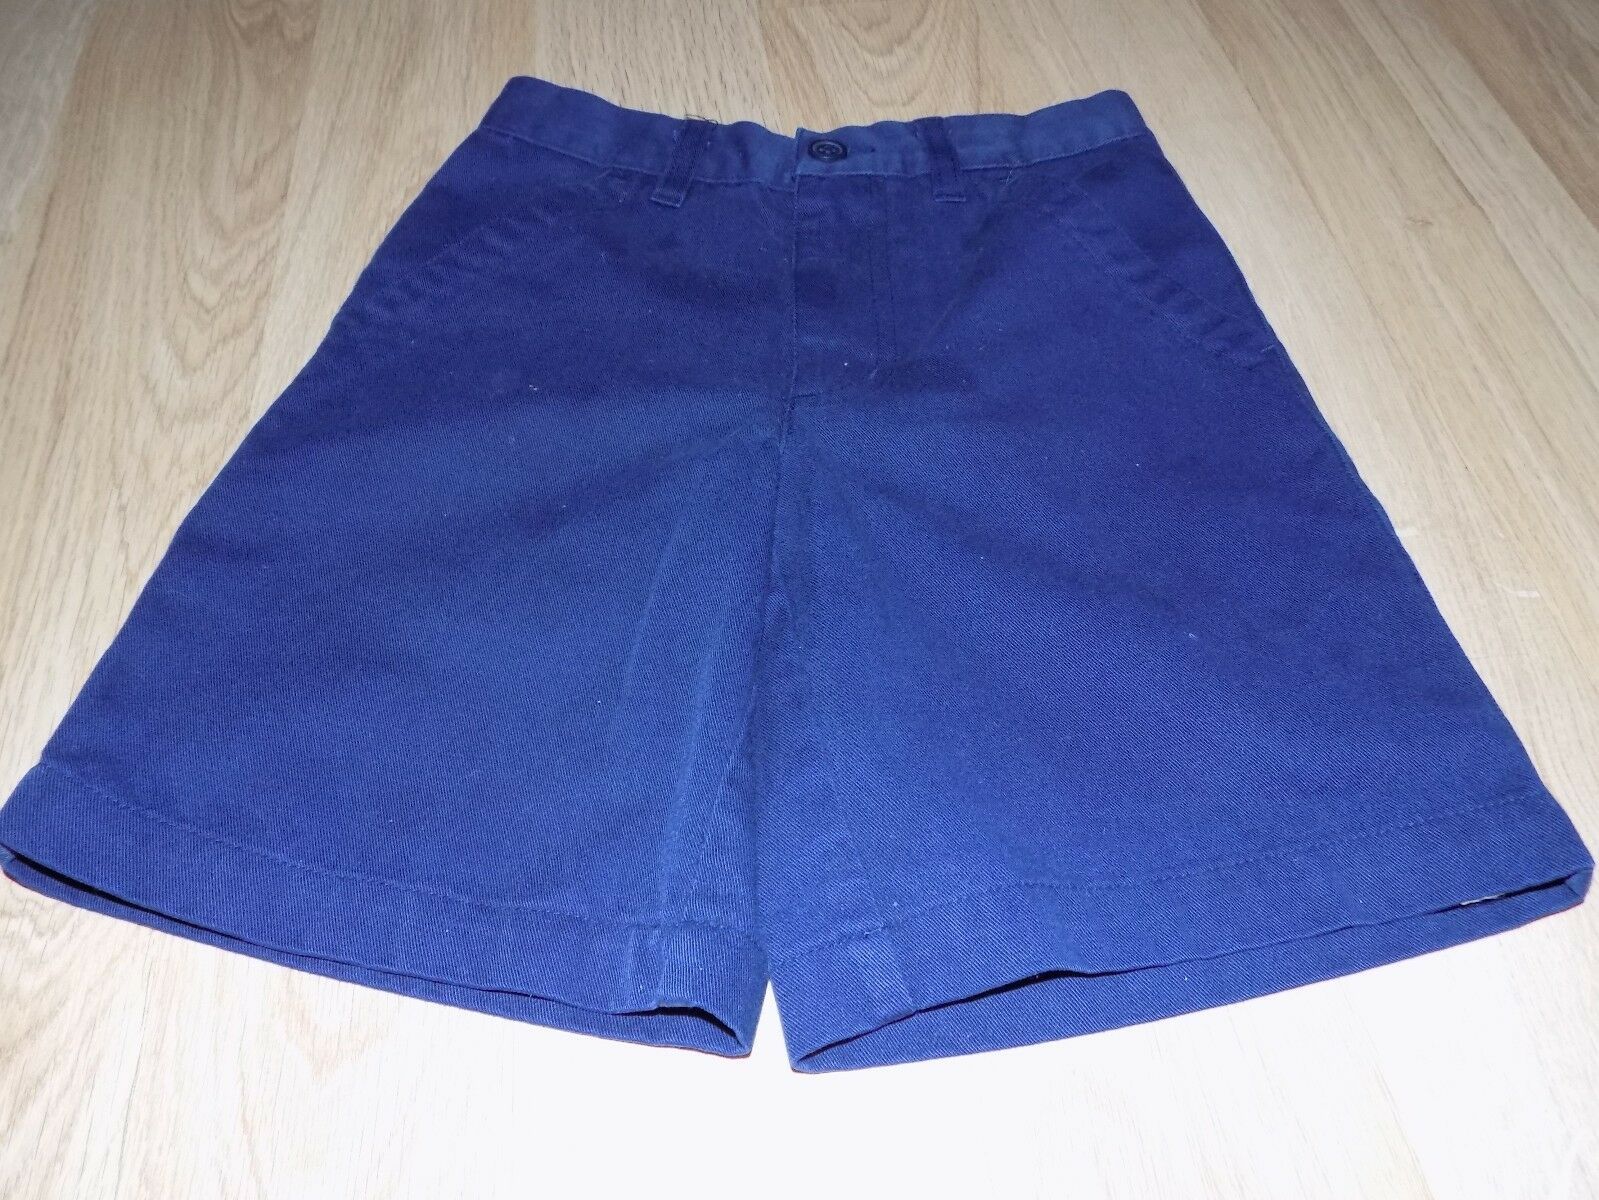 Girls Size 5 @ Class Navy Blue School Uniform Shorts GUC - $12.00